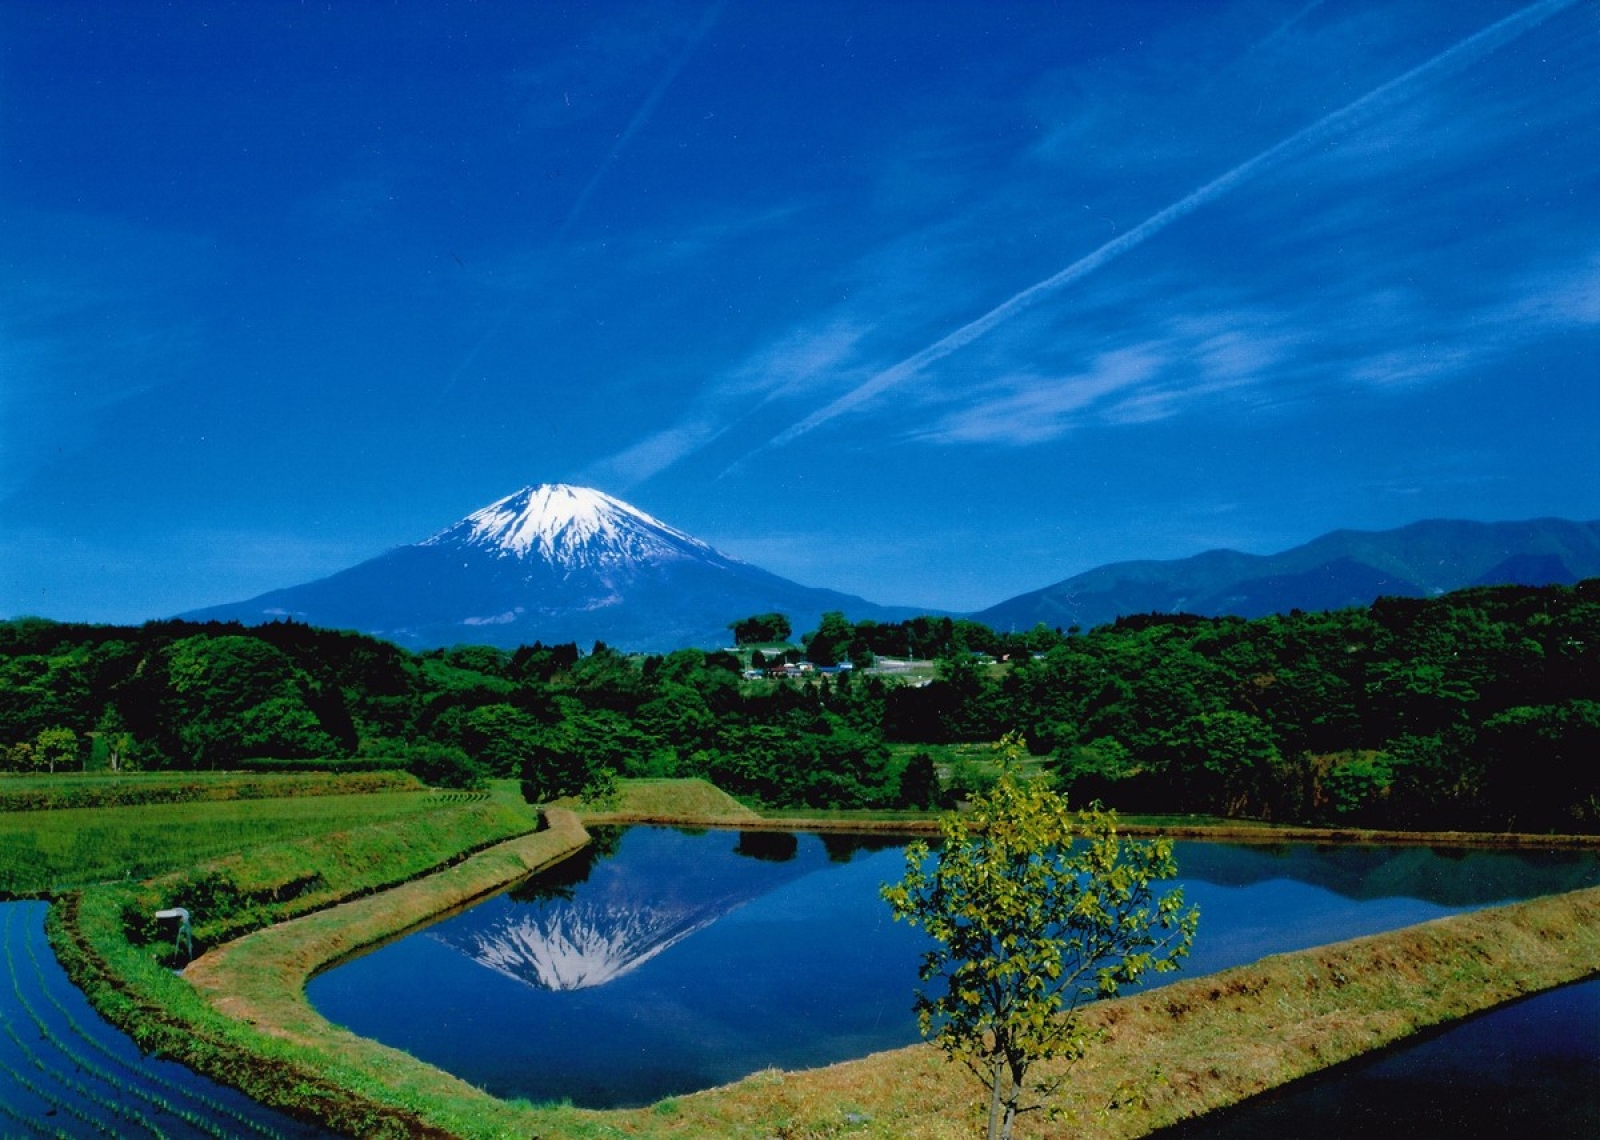 田んぼに映る富士山